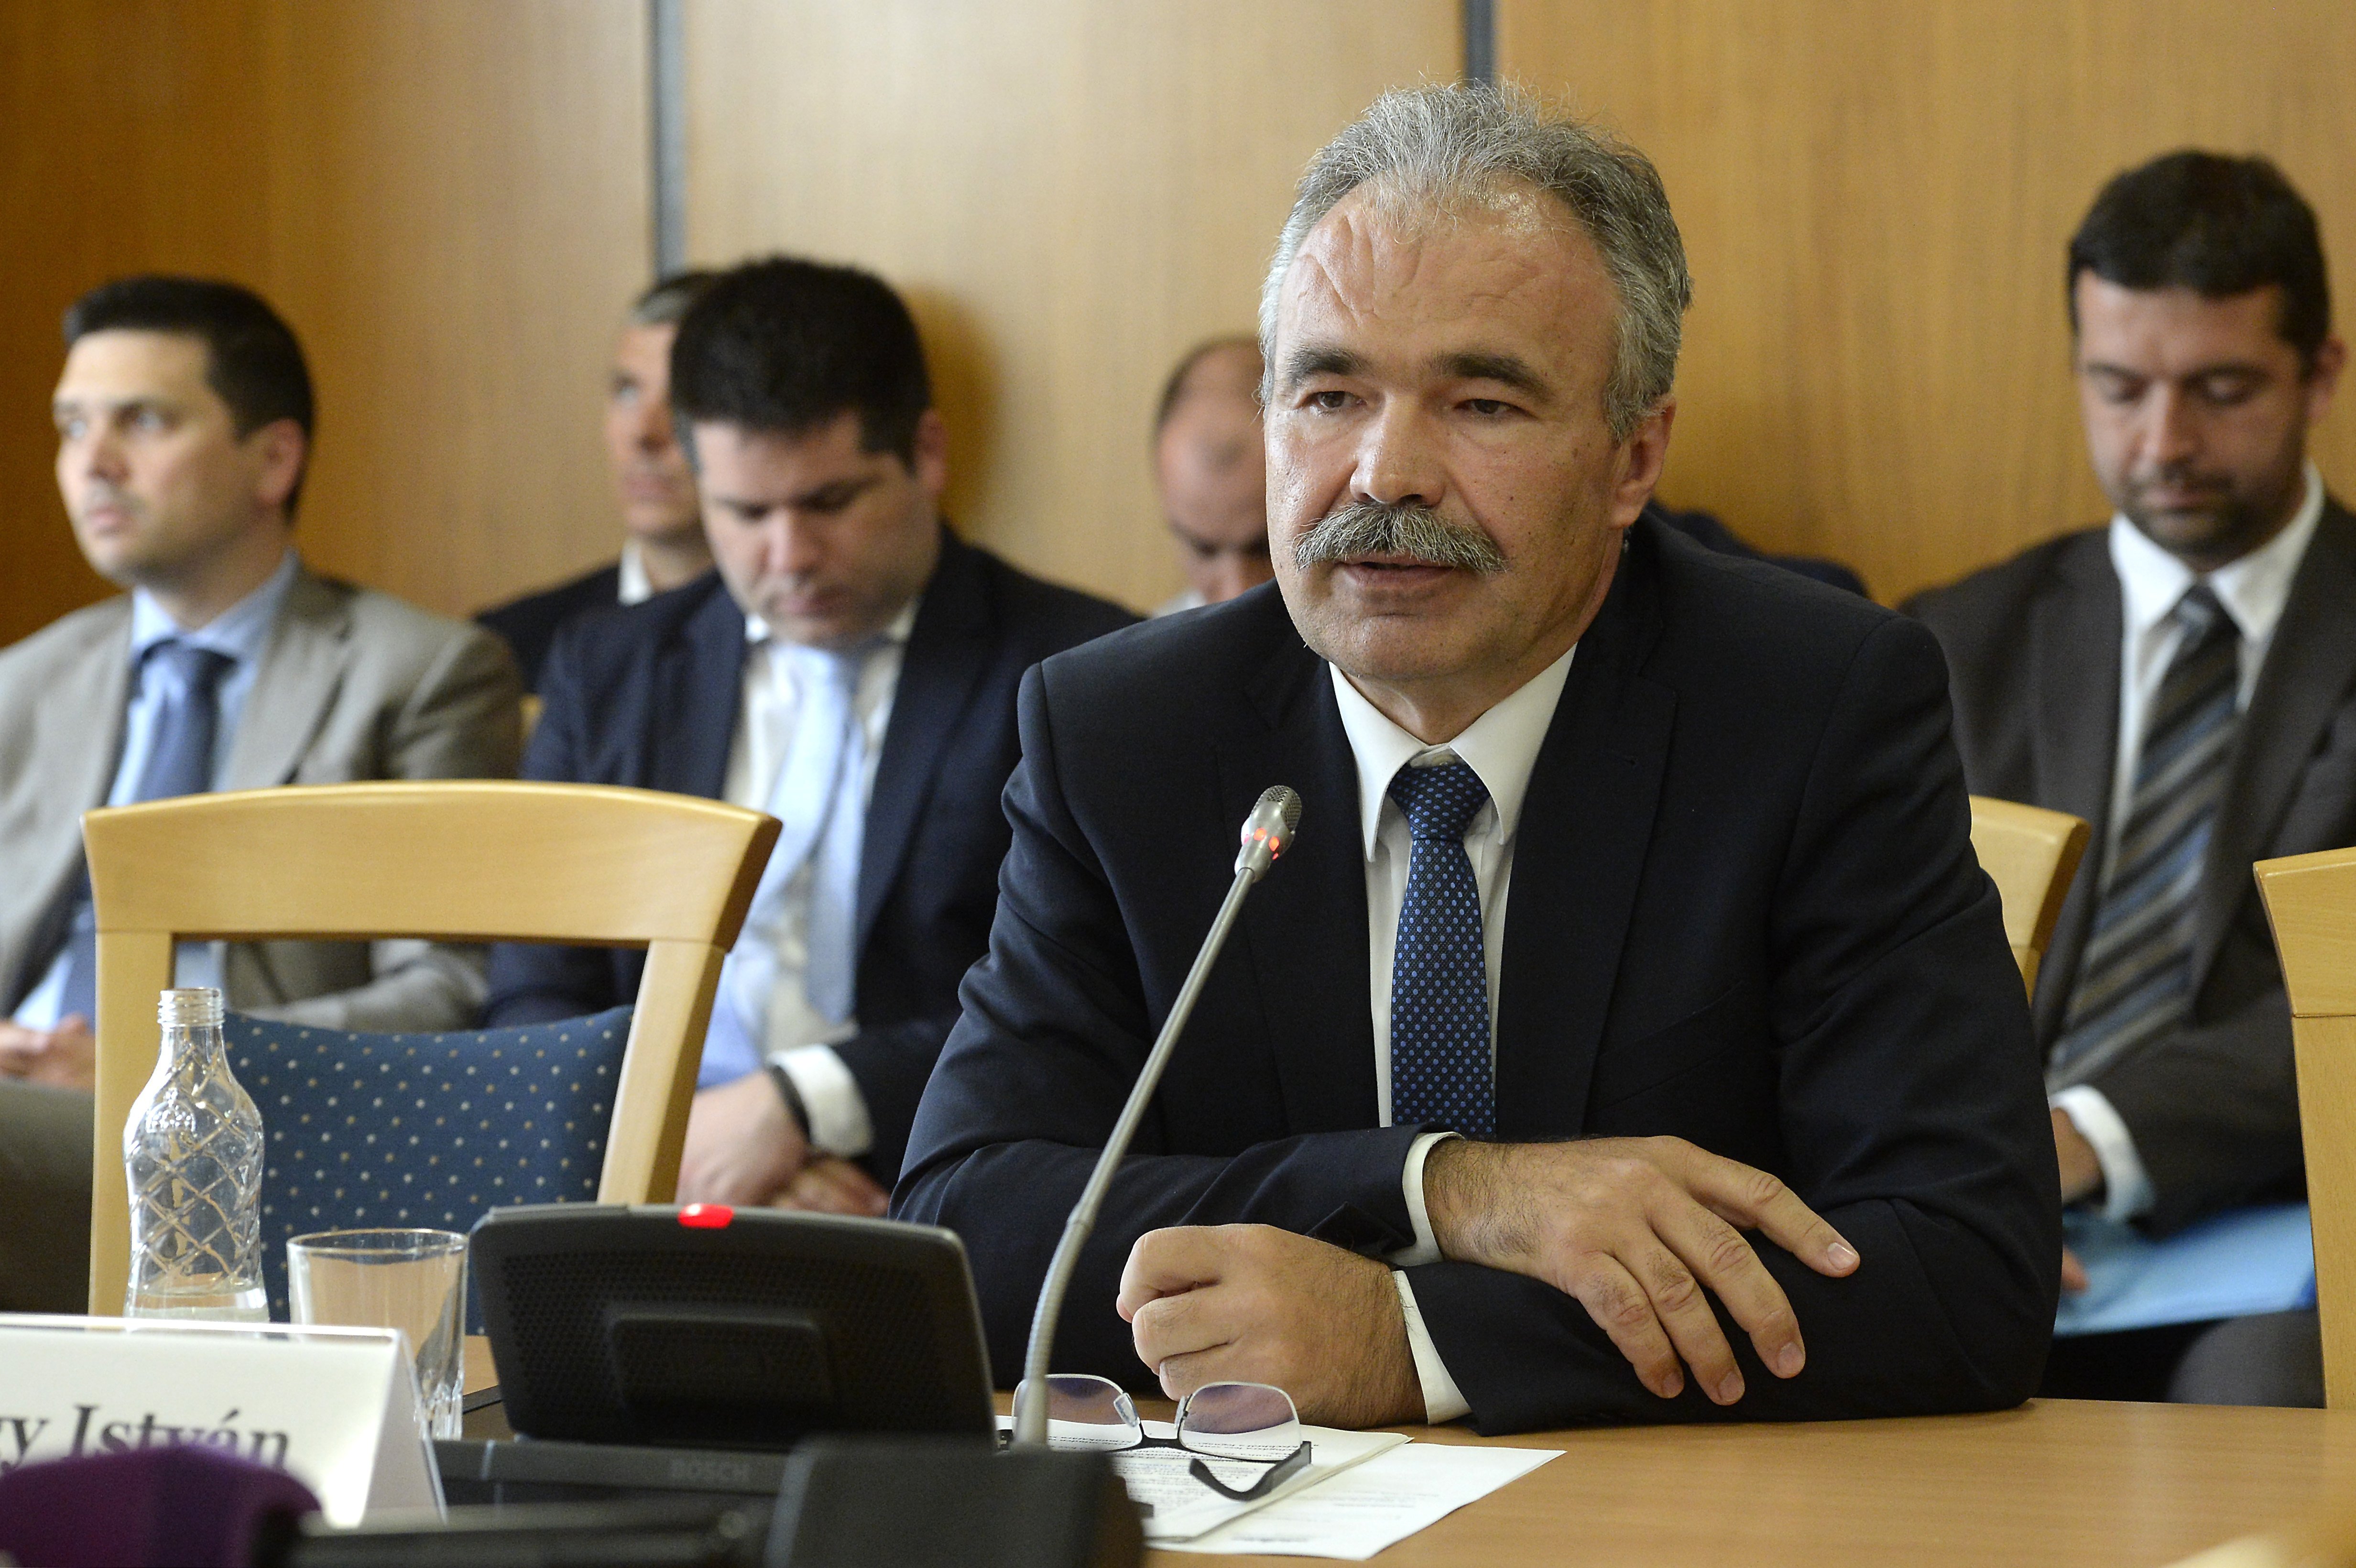 Nagy István agrárminiszter-jelölt (k) a kinevezése előtti meghallgatásán az Országgyűlés mezőgazdasági bizottságának ülésén az Országgyűlés Irodaházában 2018. május 14-én.